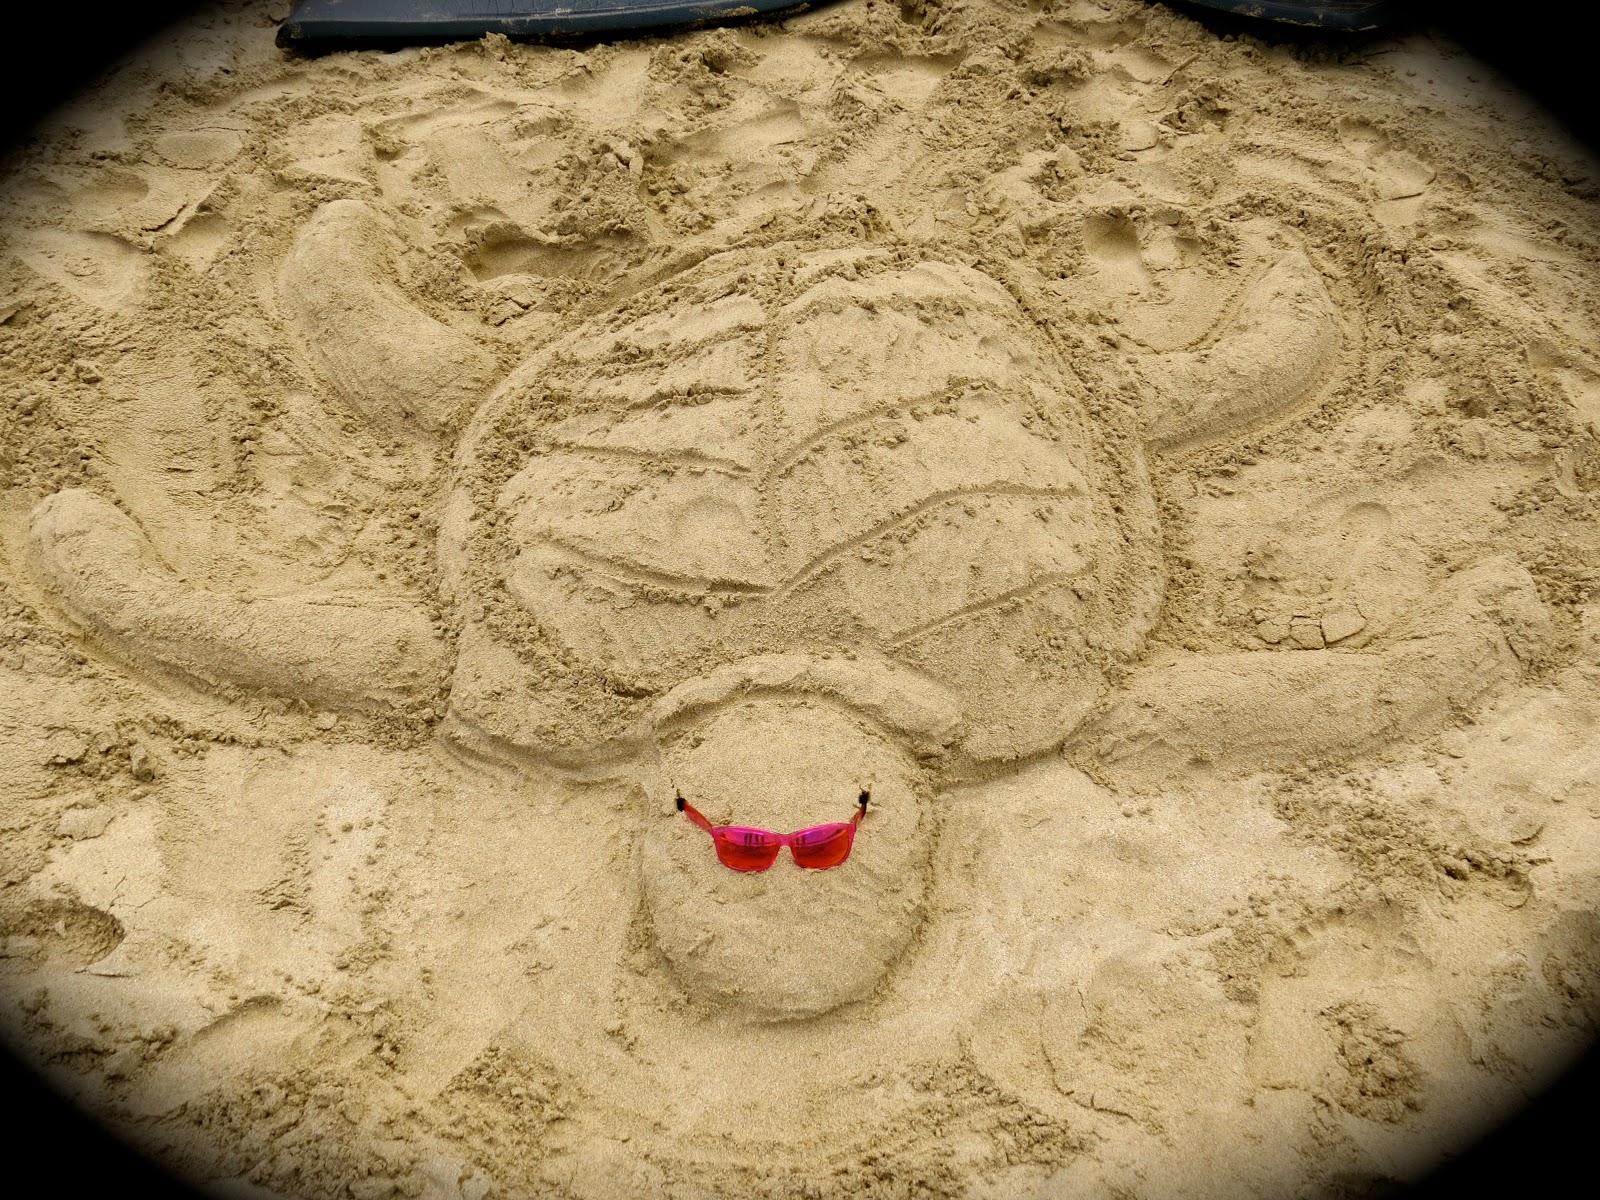 sand turtle